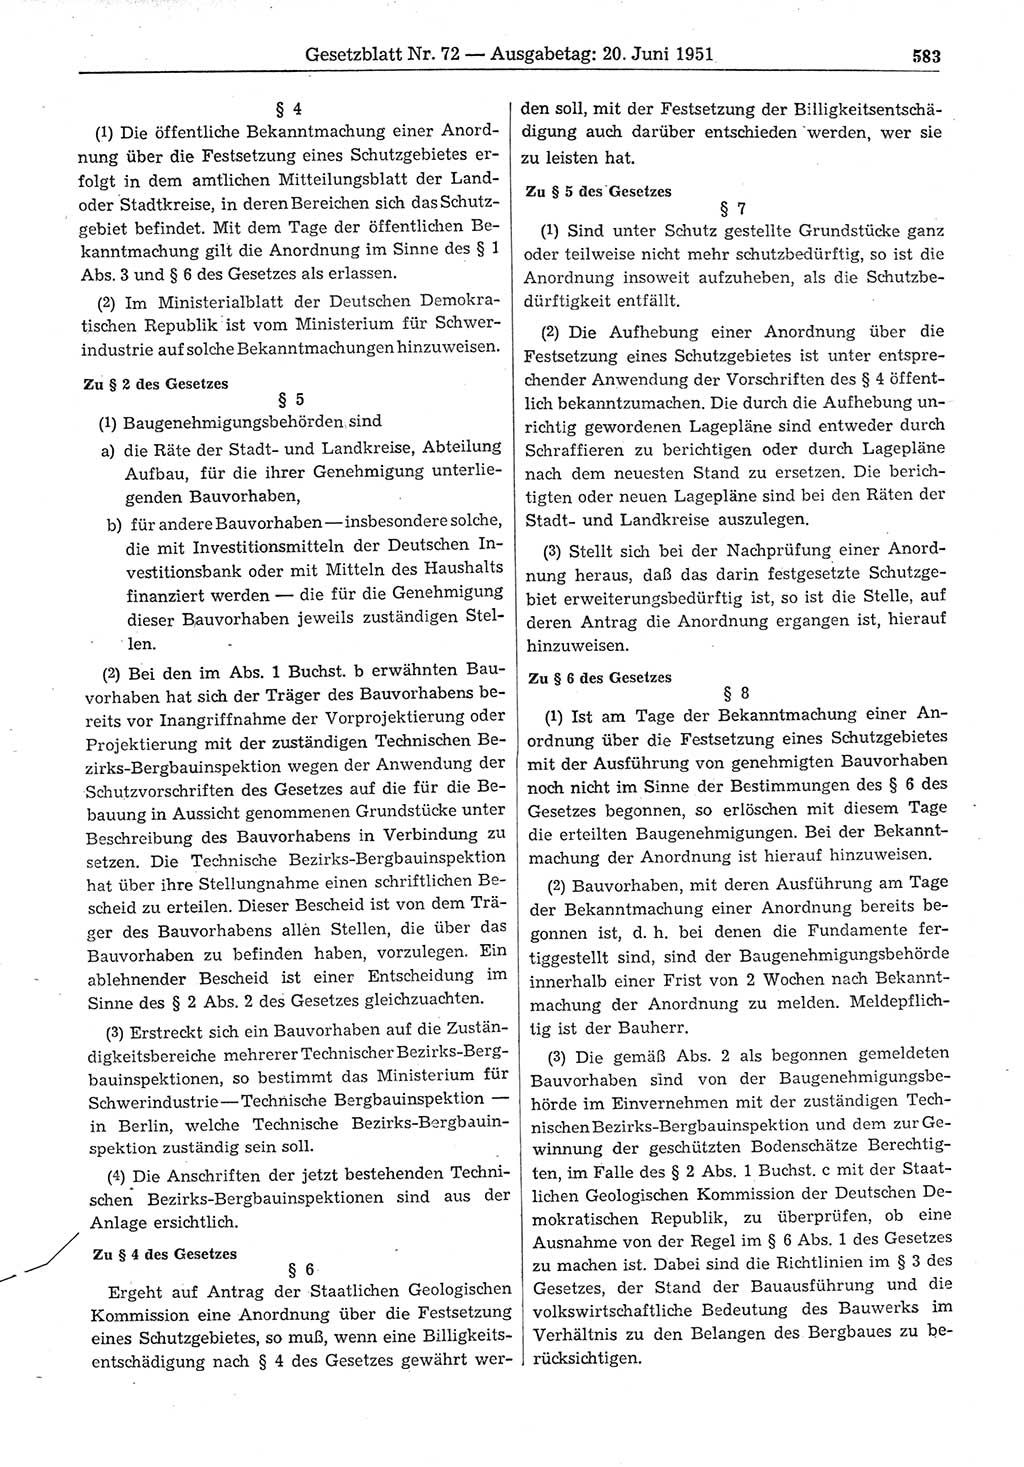 Gesetzblatt (GBl.) der Deutschen Demokratischen Republik (DDR) 1951, Seite 583 (GBl. DDR 1951, S. 583)